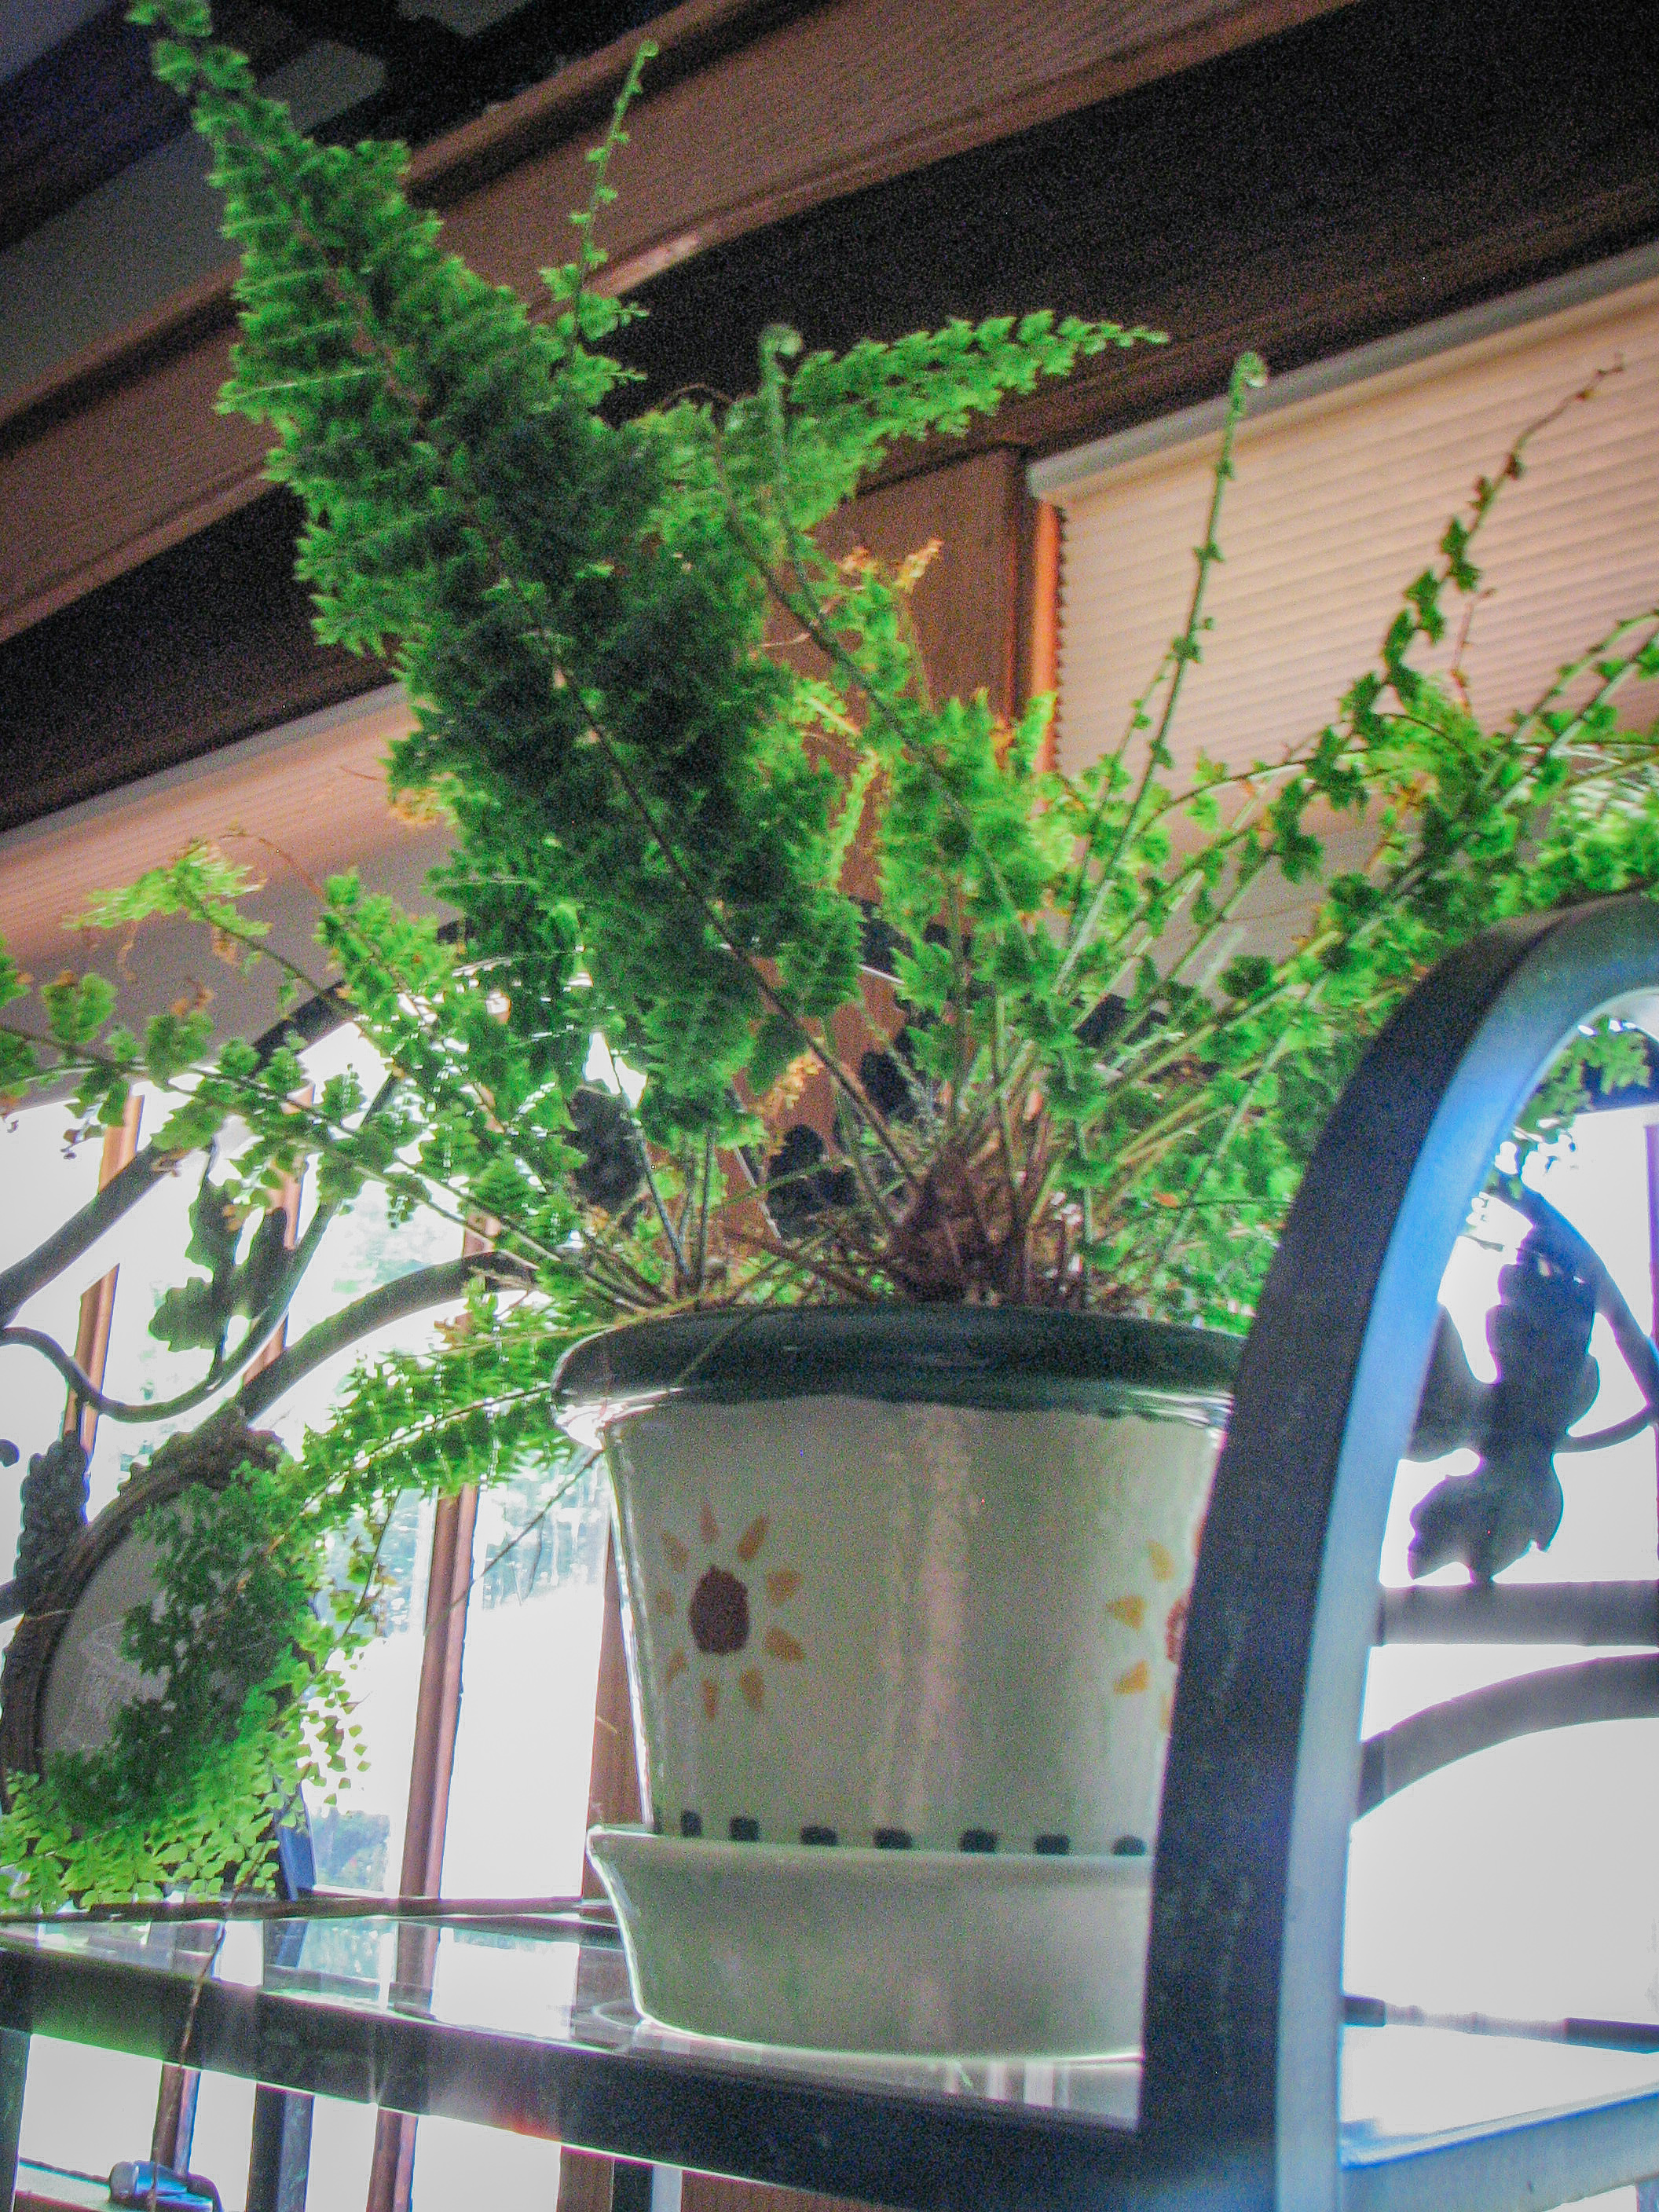 fern on plant shelf in front of window